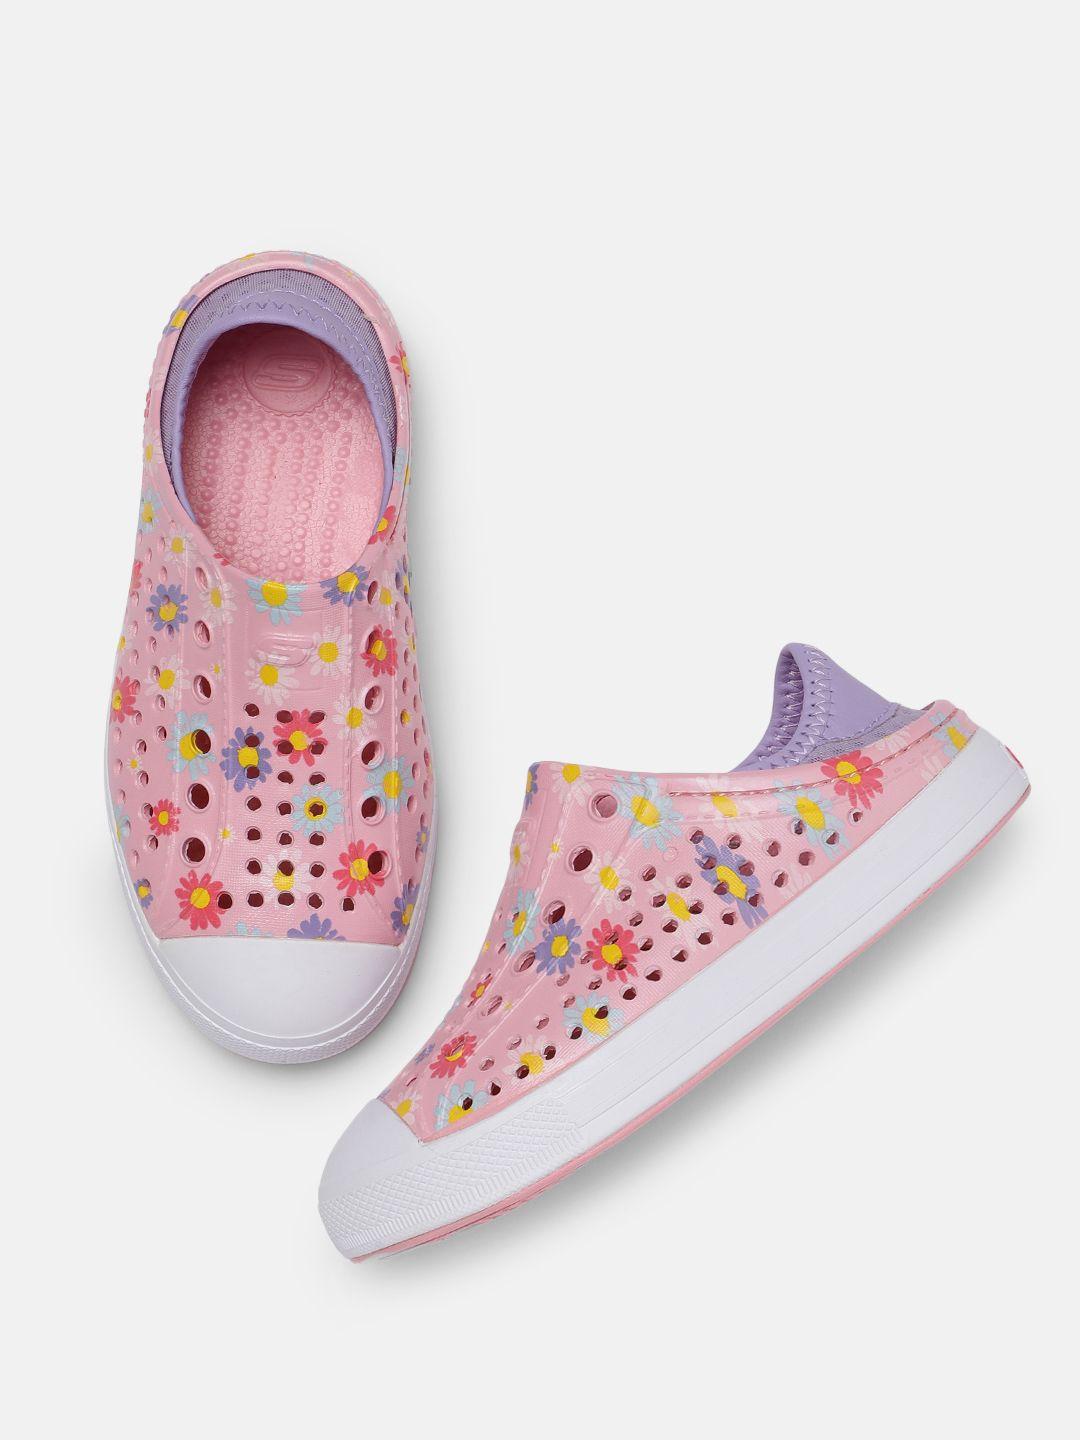 skechers girls pink cali-gear guzman steps - hello daisy printed slip-on sneakers